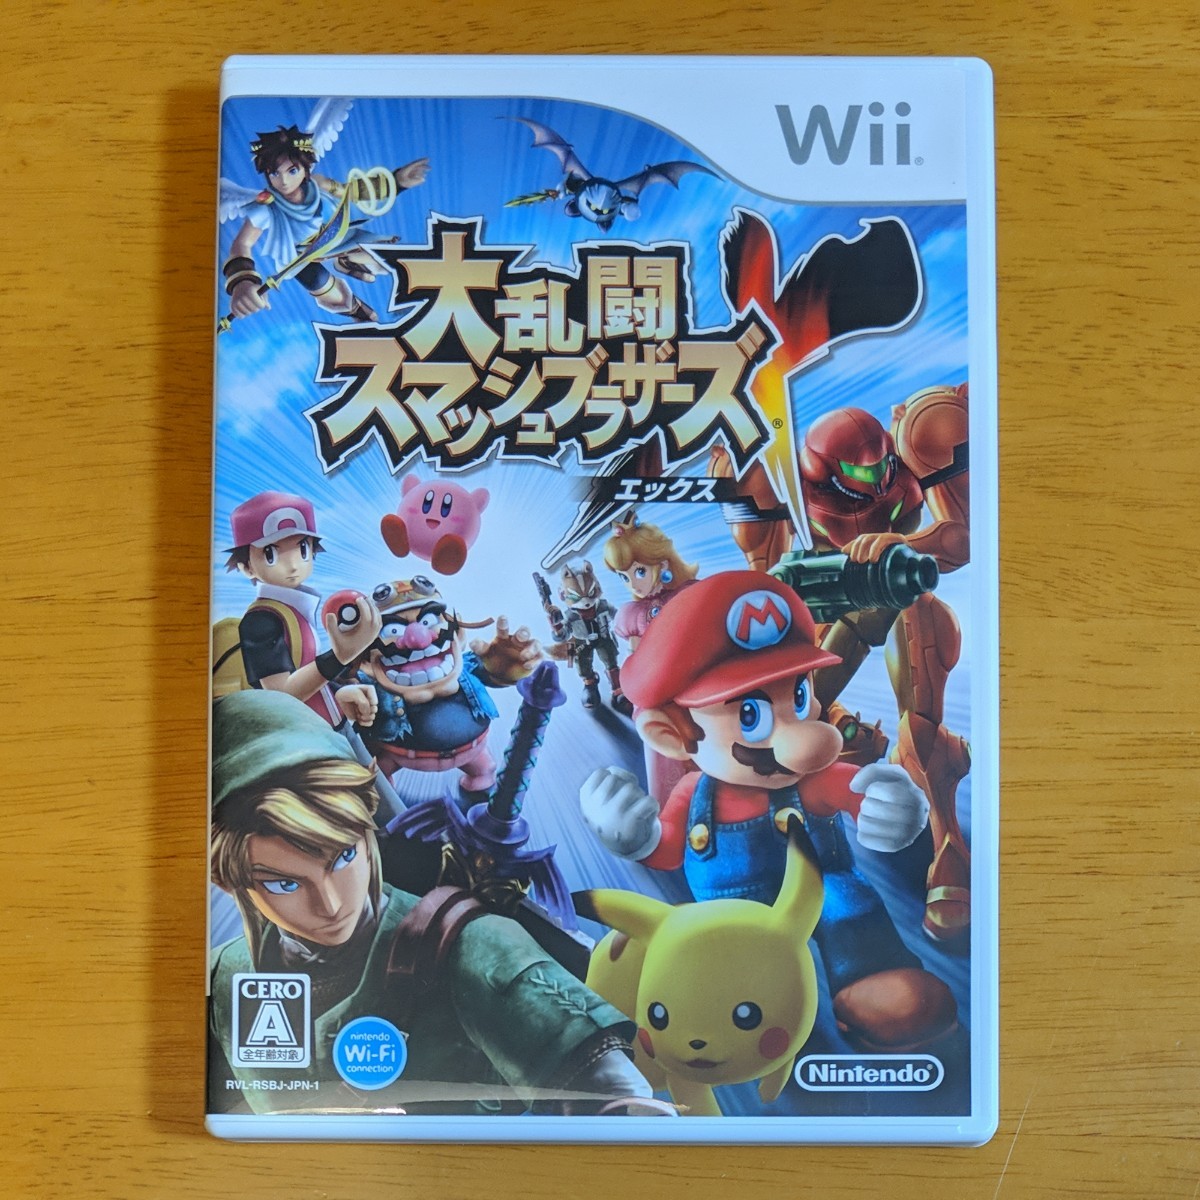 Wii Wiiソフト 任天堂Wii 大乱闘スマッシュブラザーズX スマブラX スマブラ